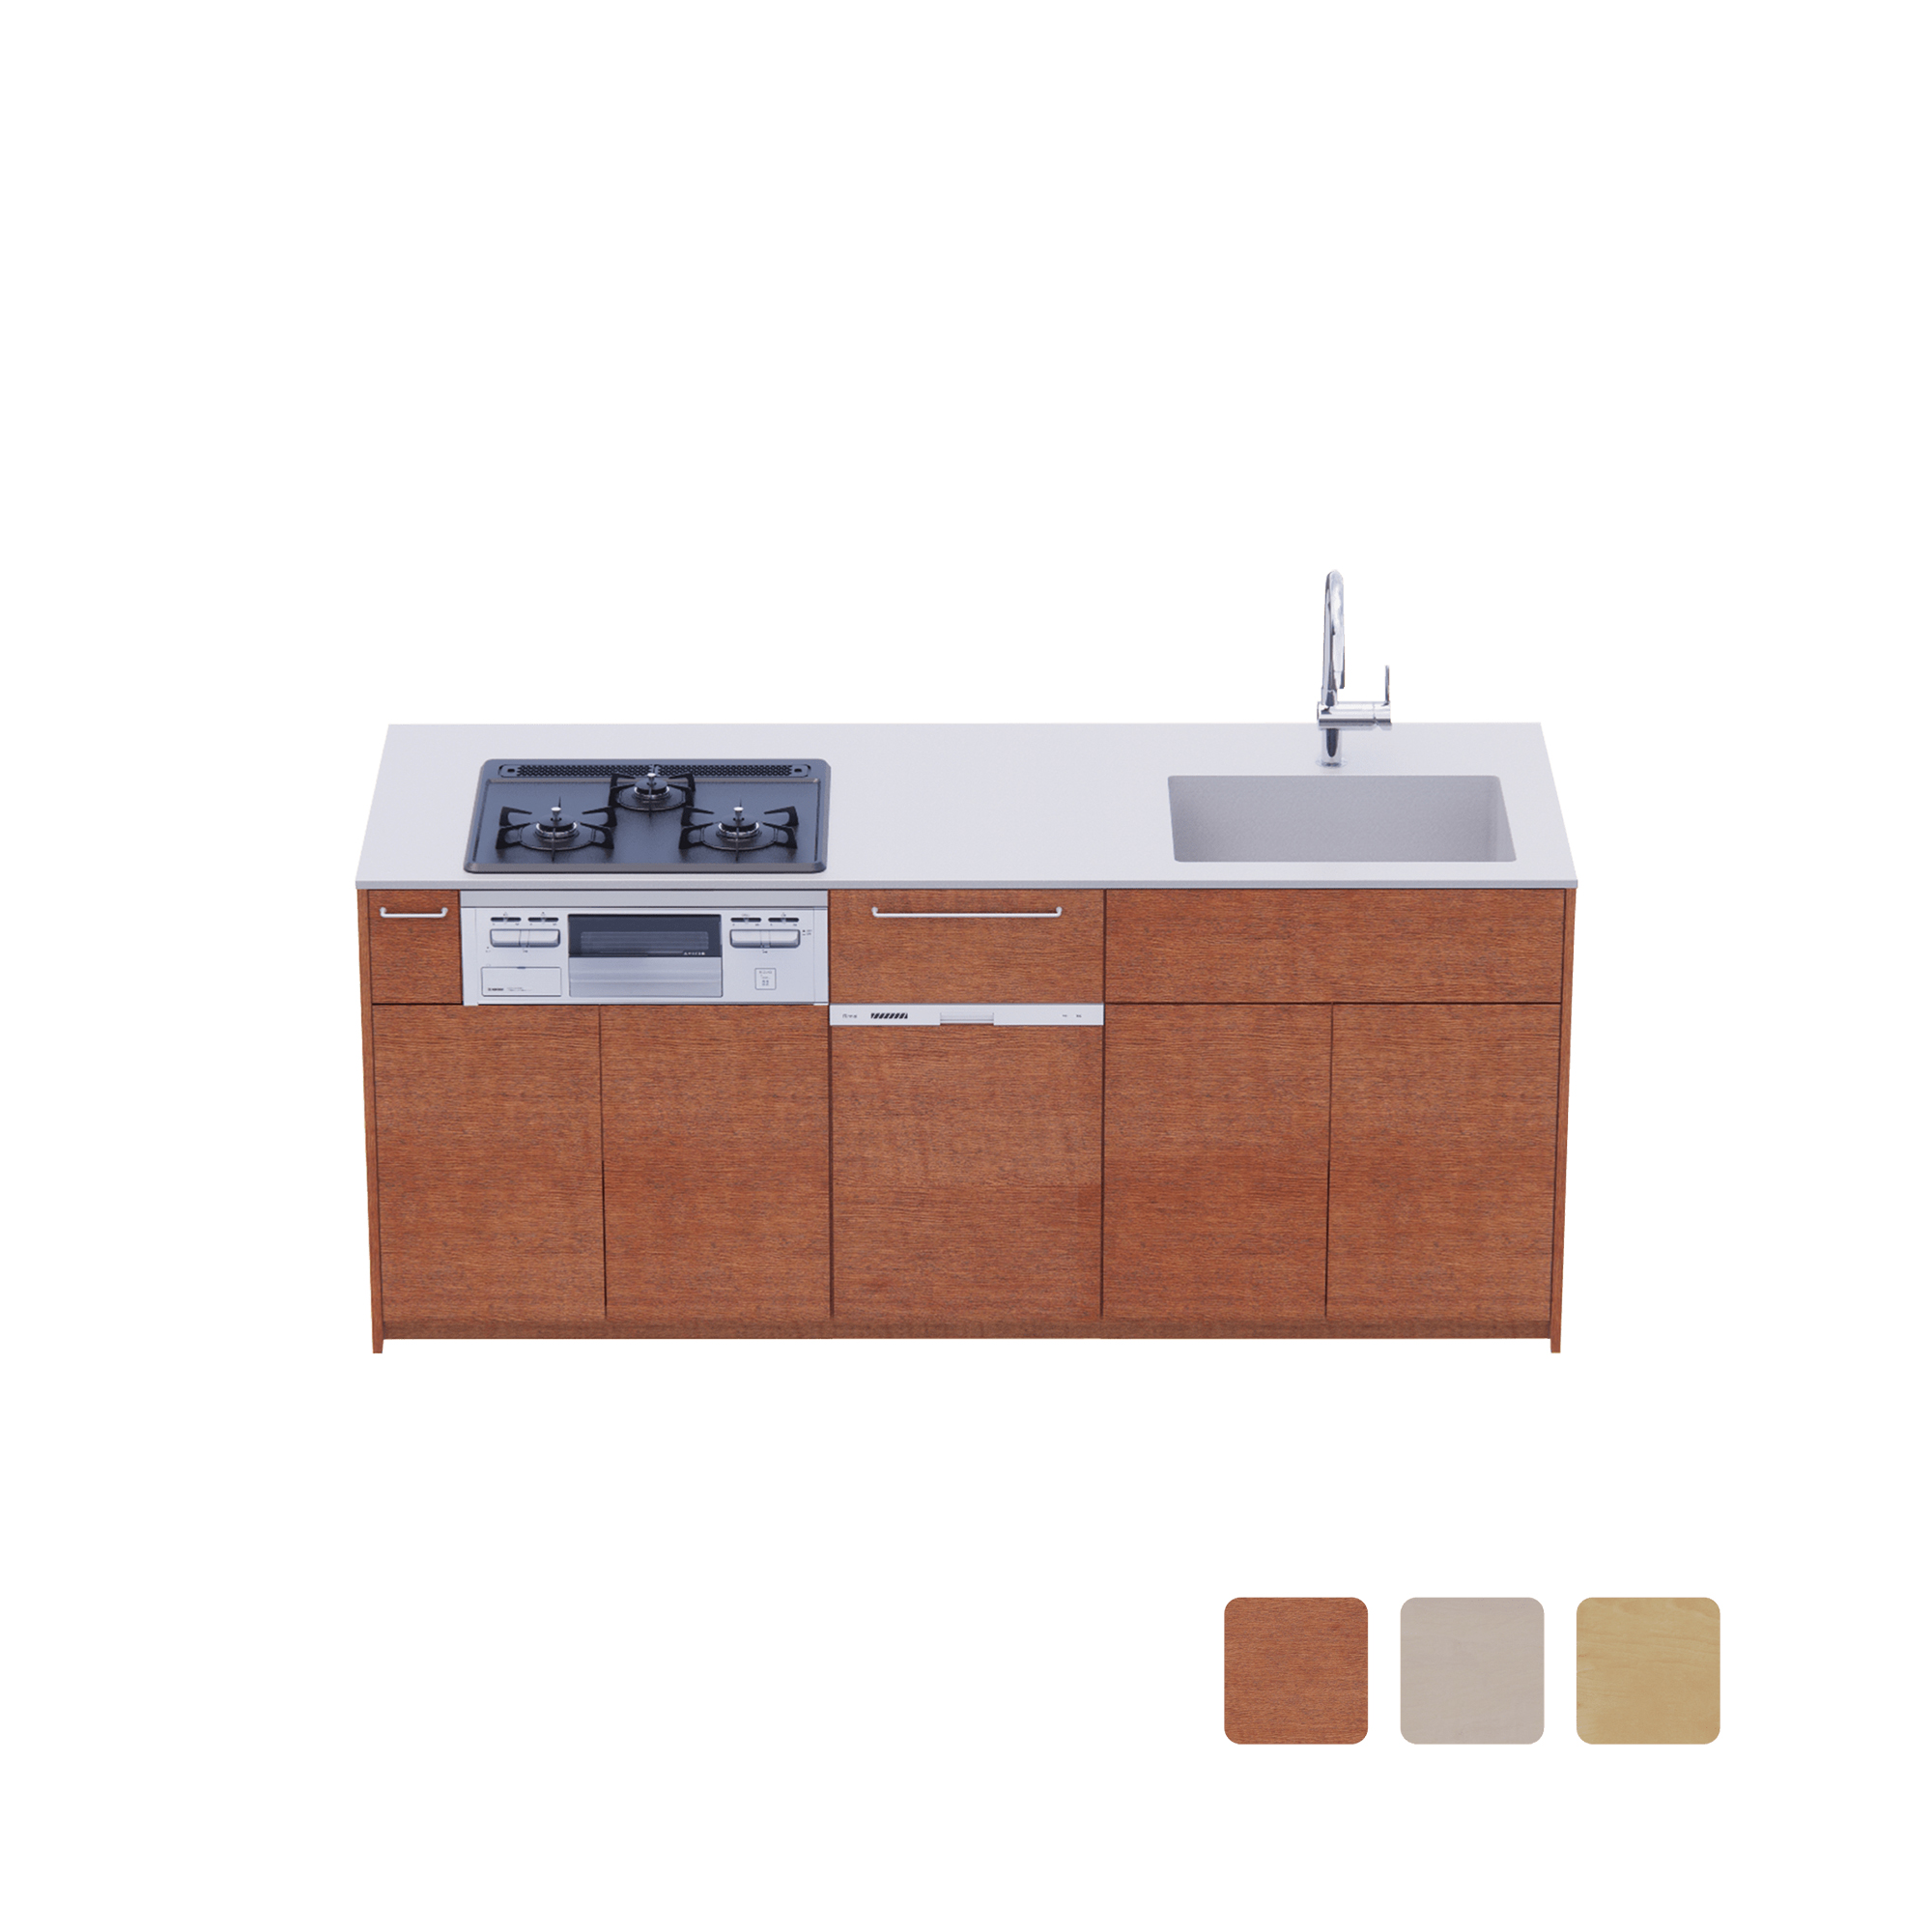 木製システムキッチン 対面型 W1990・コンロあり / オーブンなし / 食洗機あり KB-KC022-33-G183 対面型 W1990　※ 別売り品の水栓・コンロ・食洗機を設置した時のイメージです